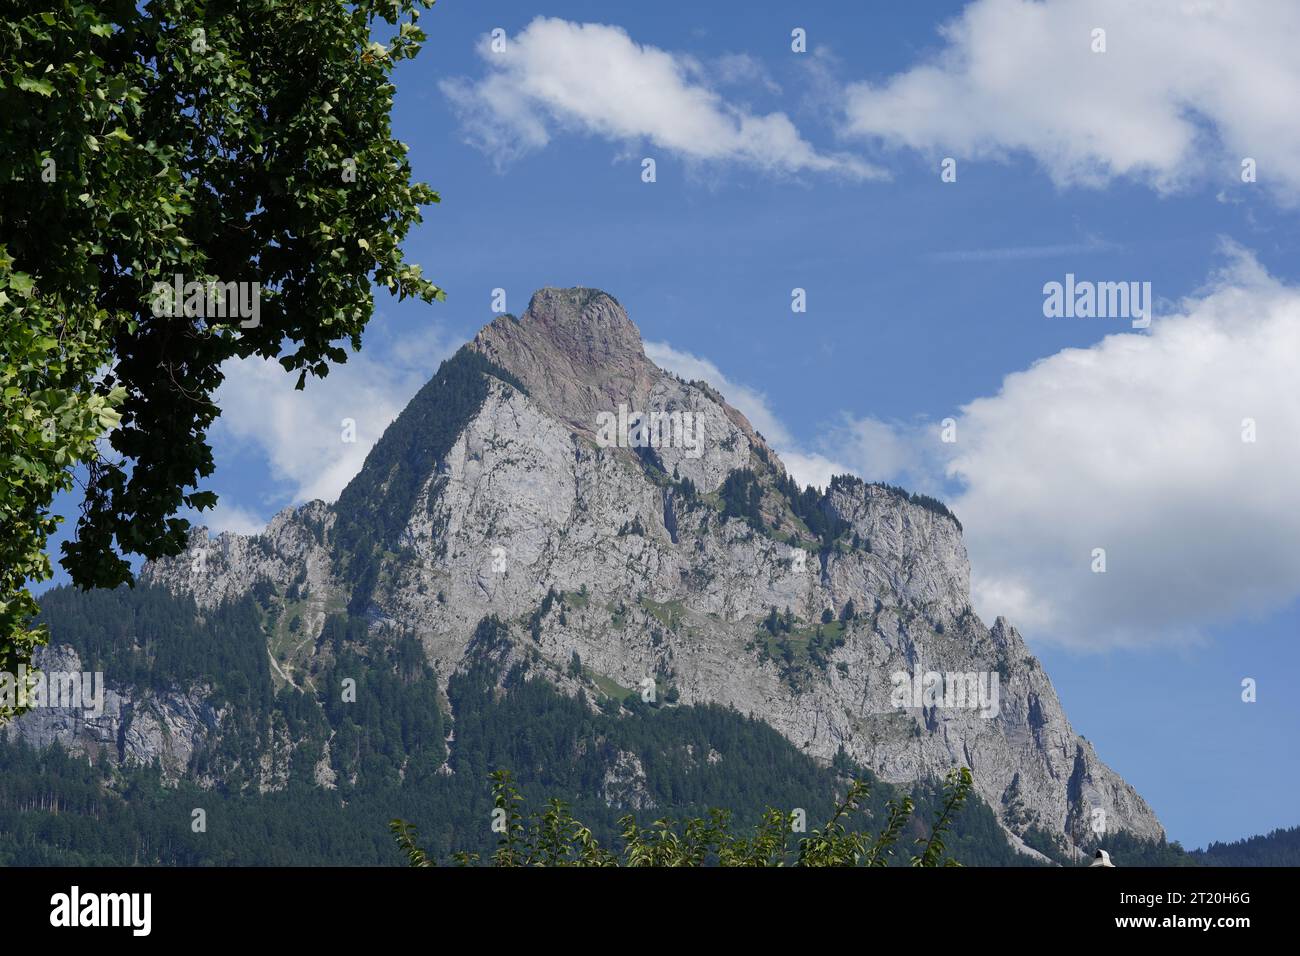 Montagne appelée Grosser Mythen située dans les Alpes suisses, dans le canton Schwyz, Suisse. Il y a des arbres encadrant la capture du côté gauche. Banque D'Images